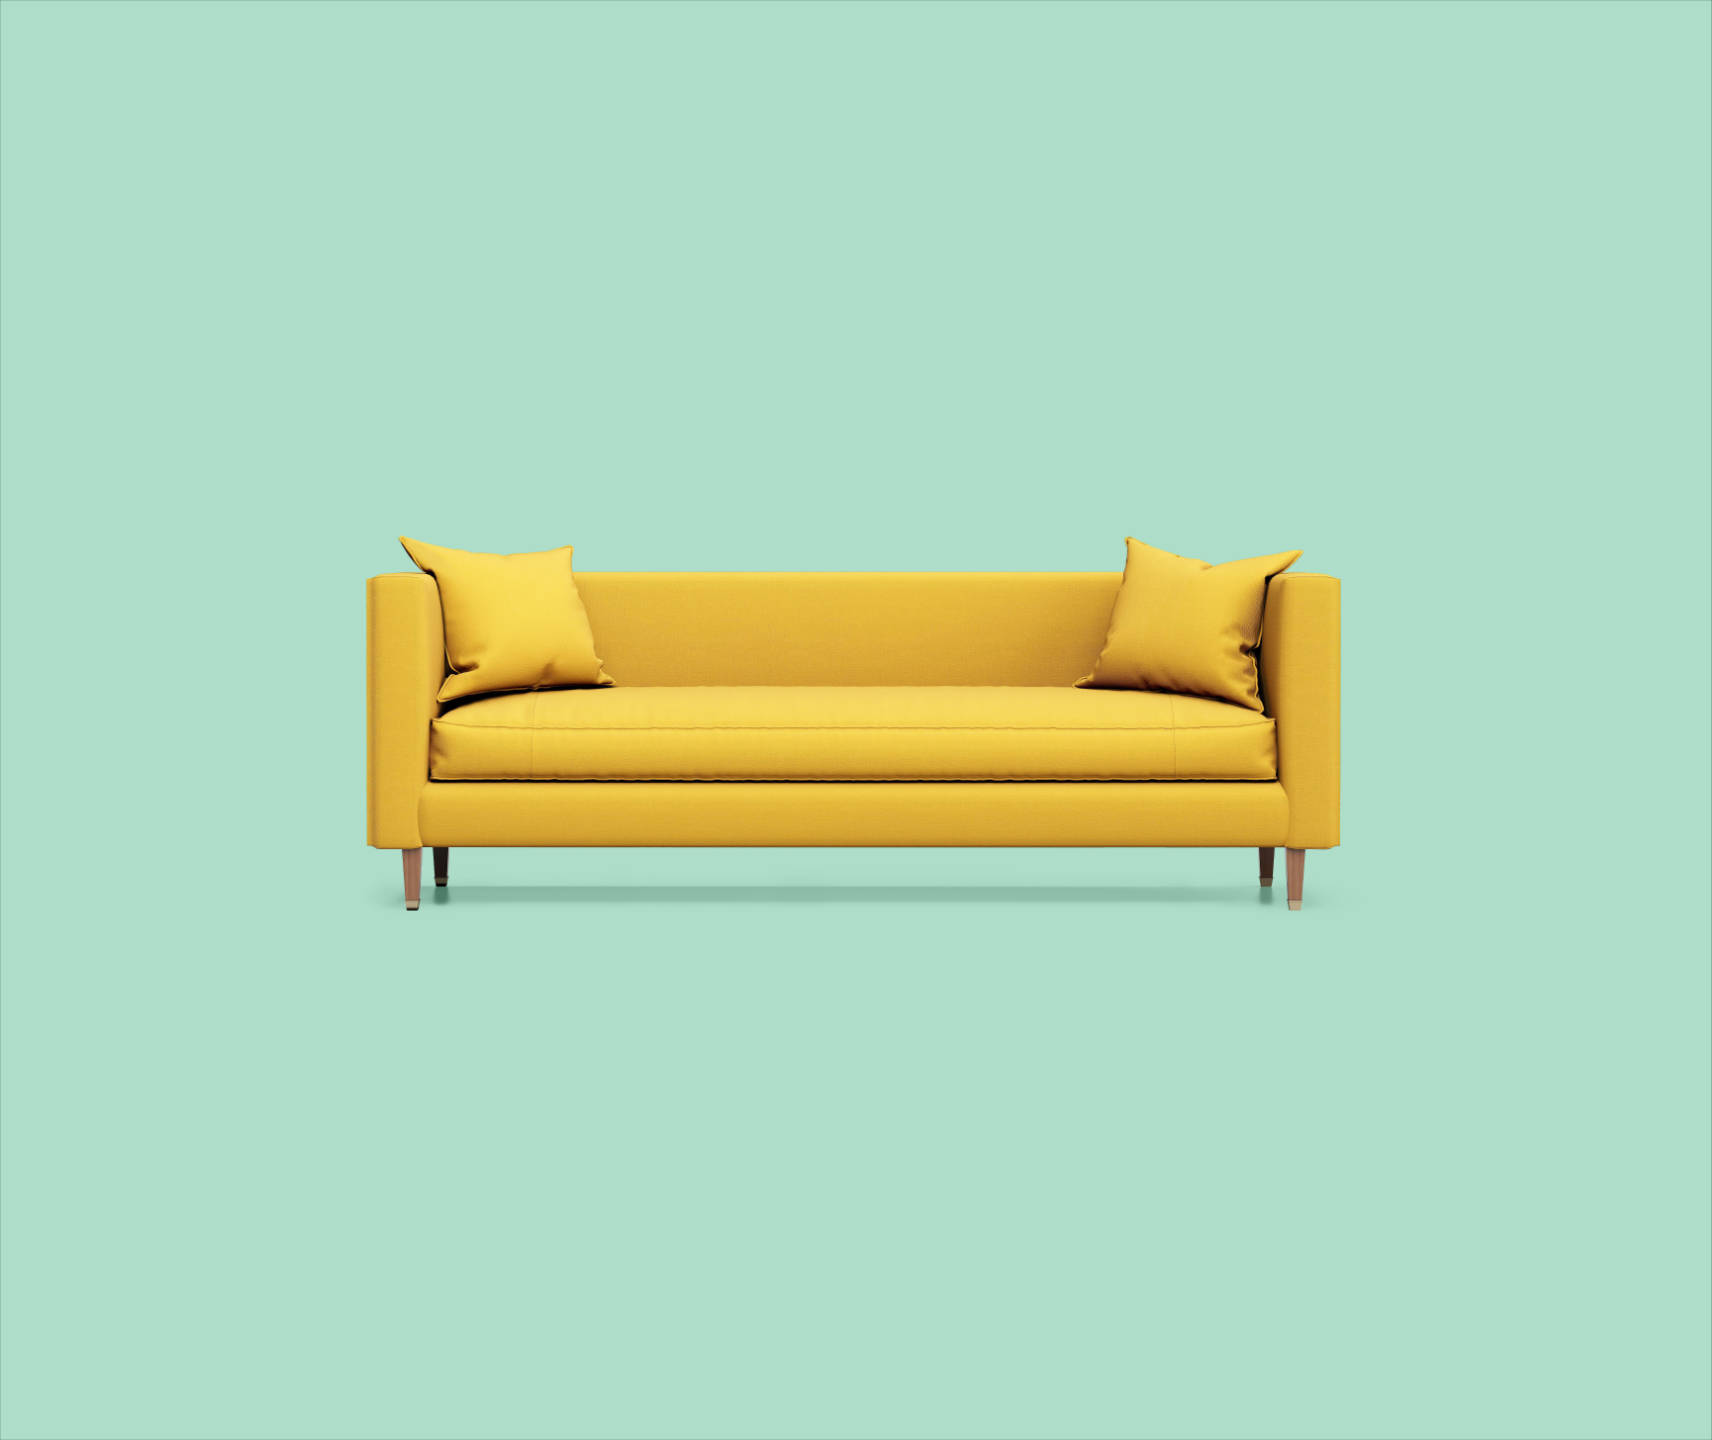 Gelbes Sofa